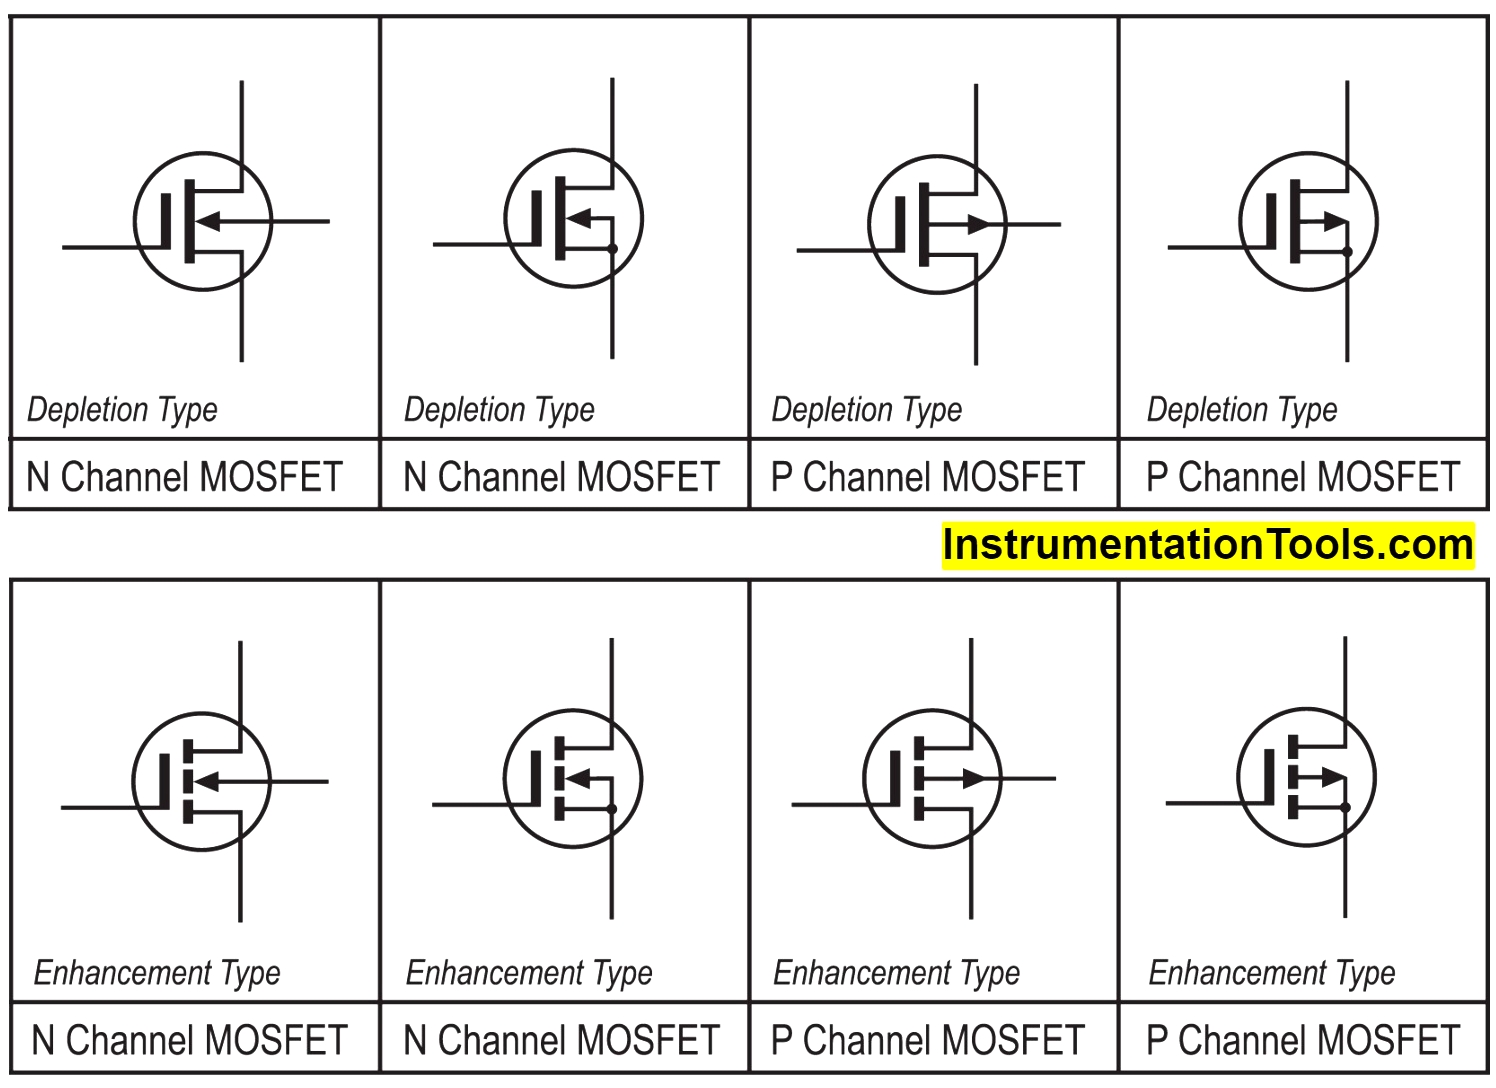 mosfet transistor symbol